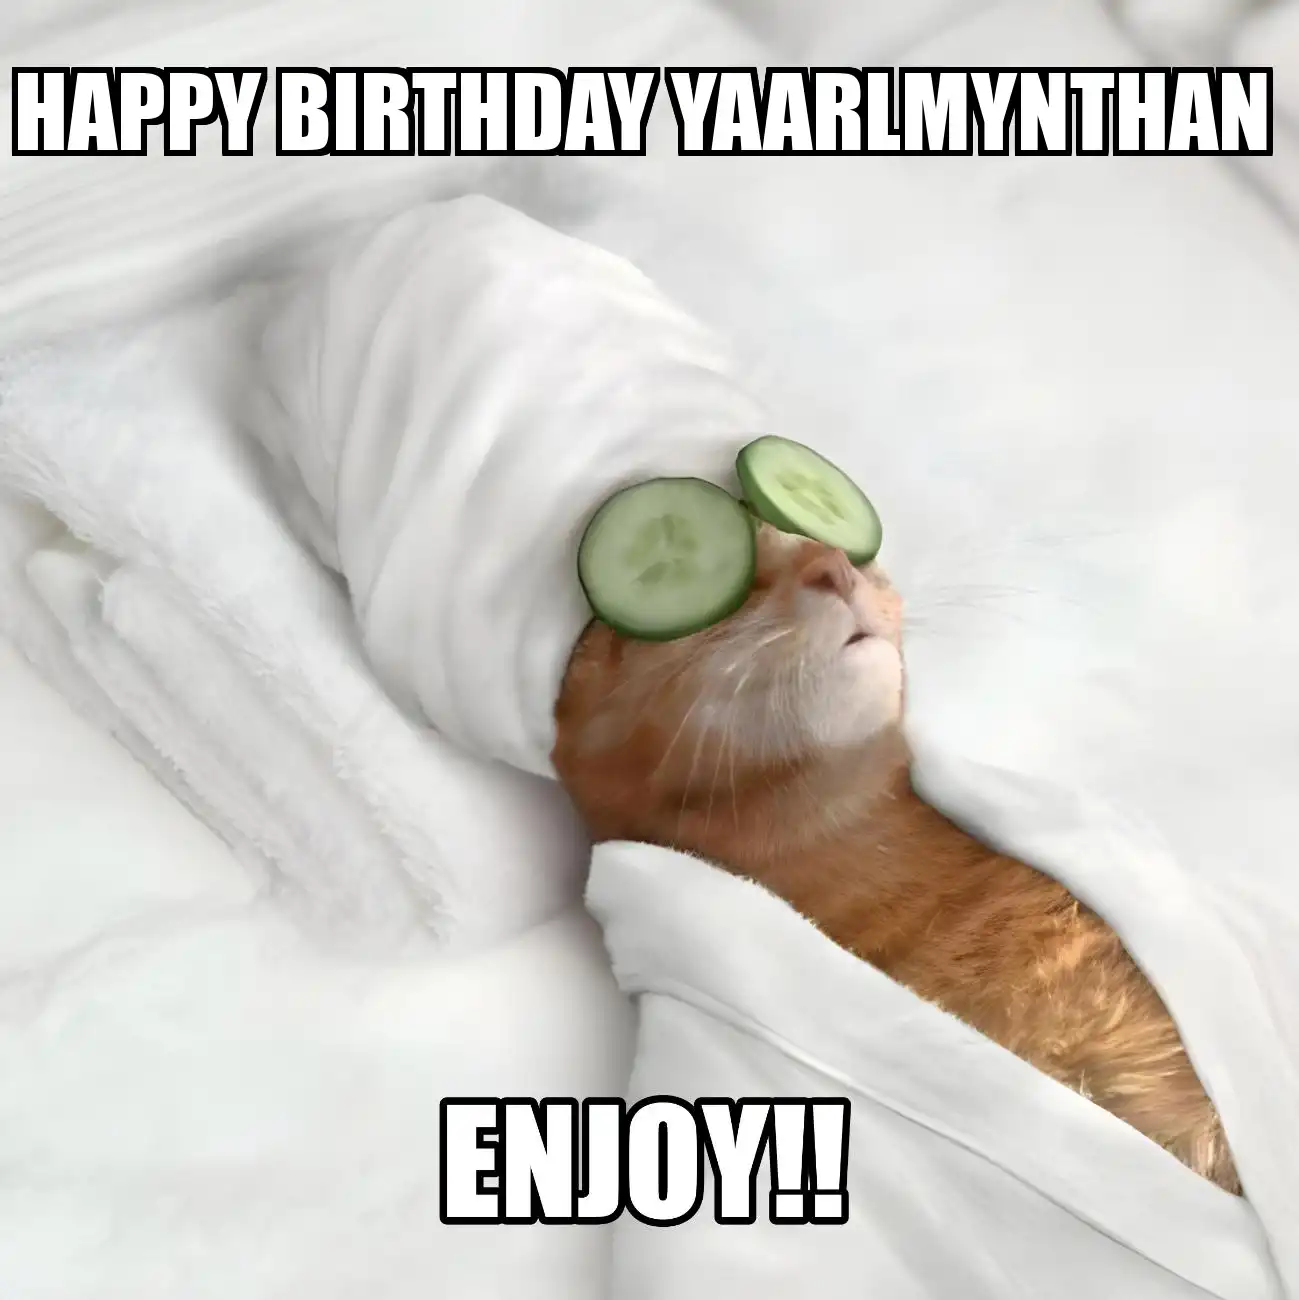 Happy Birthday Yaarlmynthan Enjoy Cat Meme